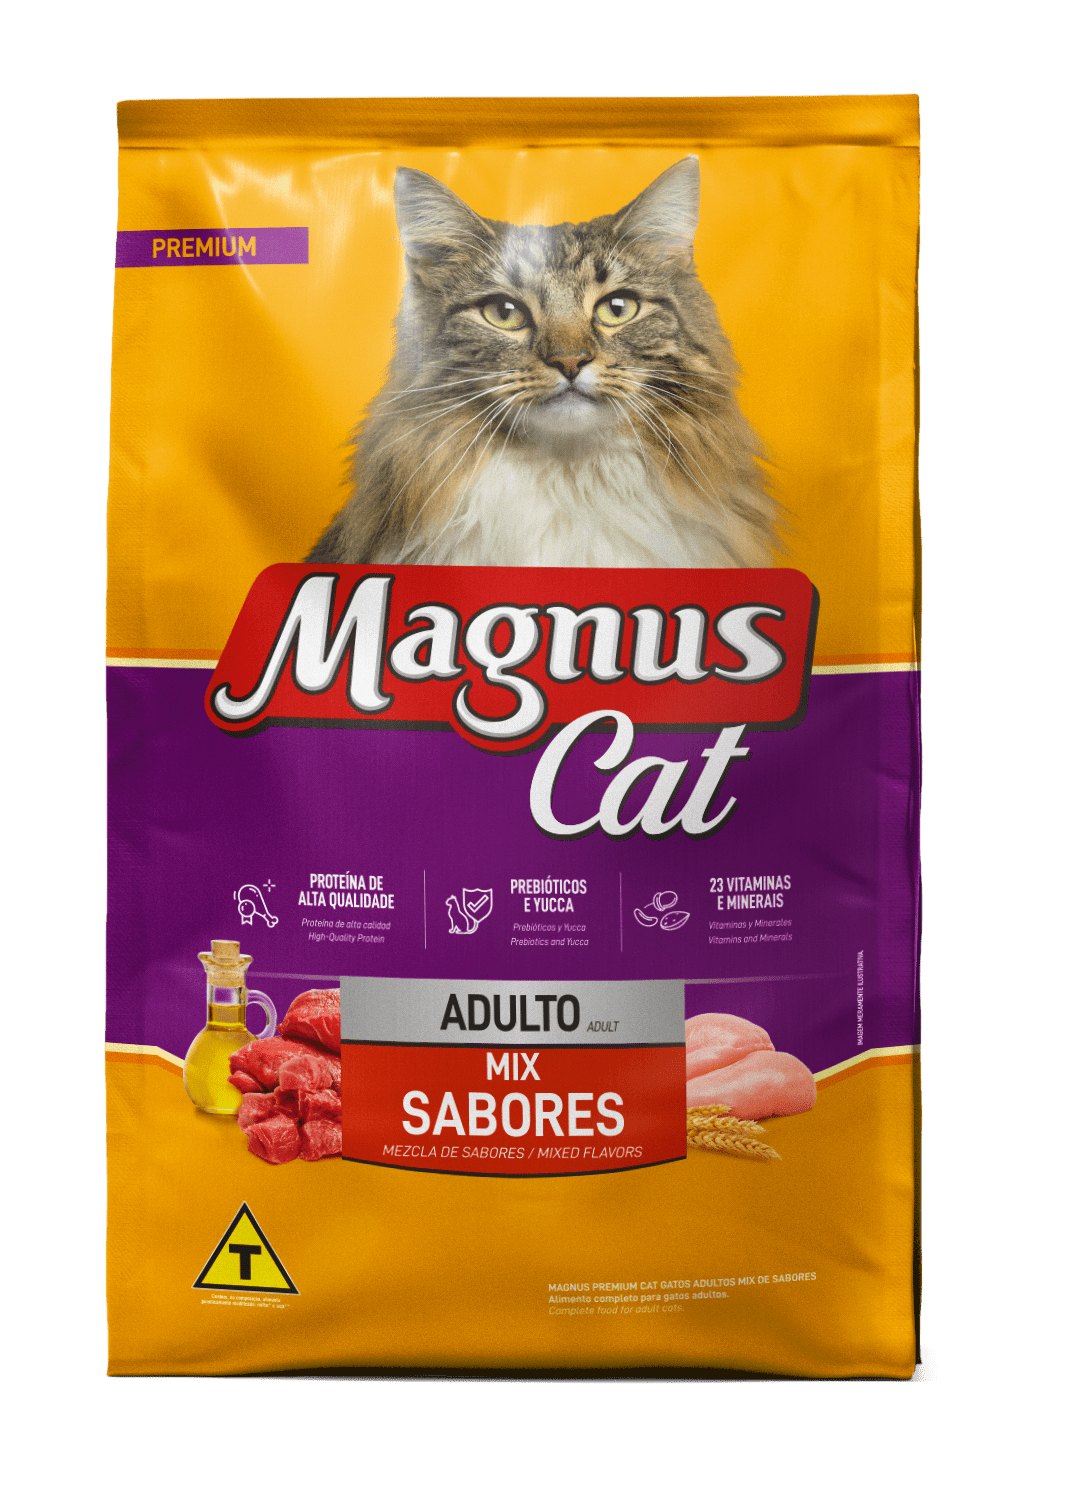 Magnus Cat Premium Gatos Adultos Mescla de Sabores